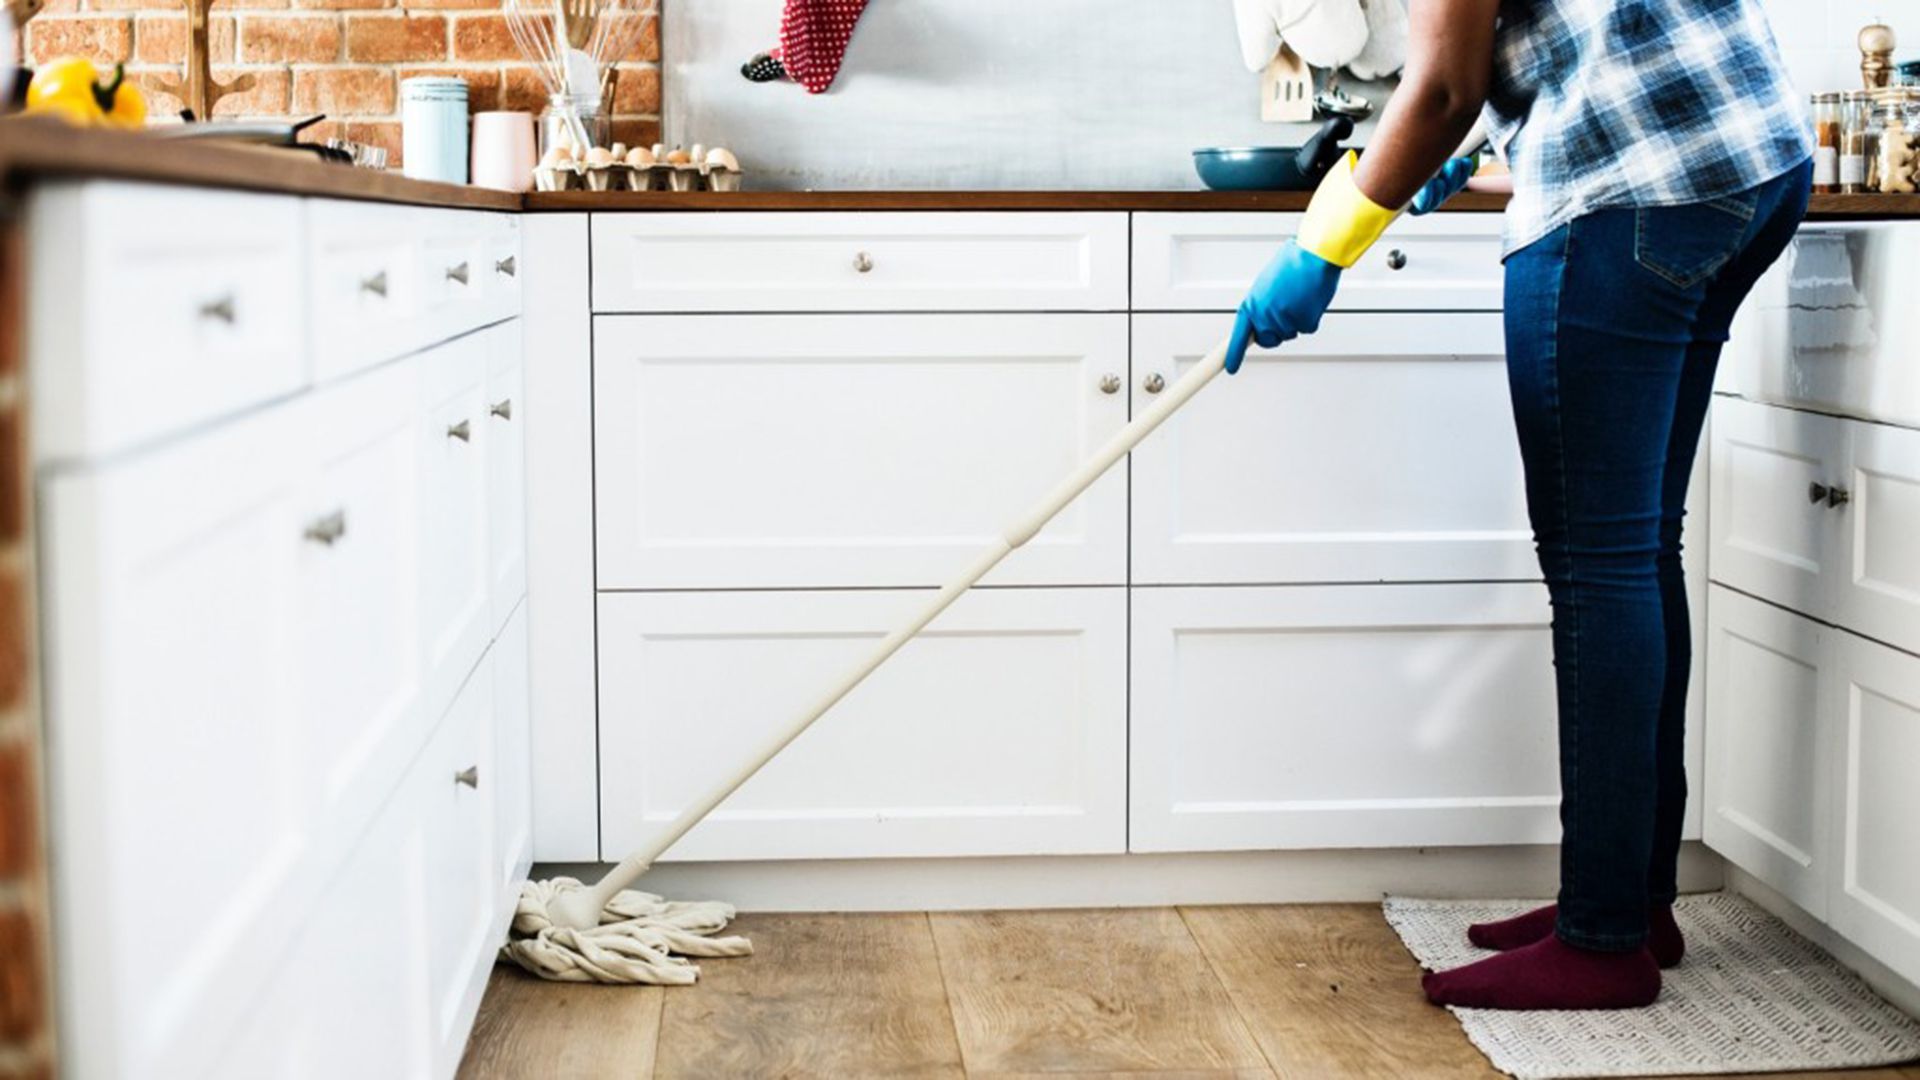 La limpieza de la casa recomienda el IMSS se realice con detergente y agua y desinfectar con cloro diluido